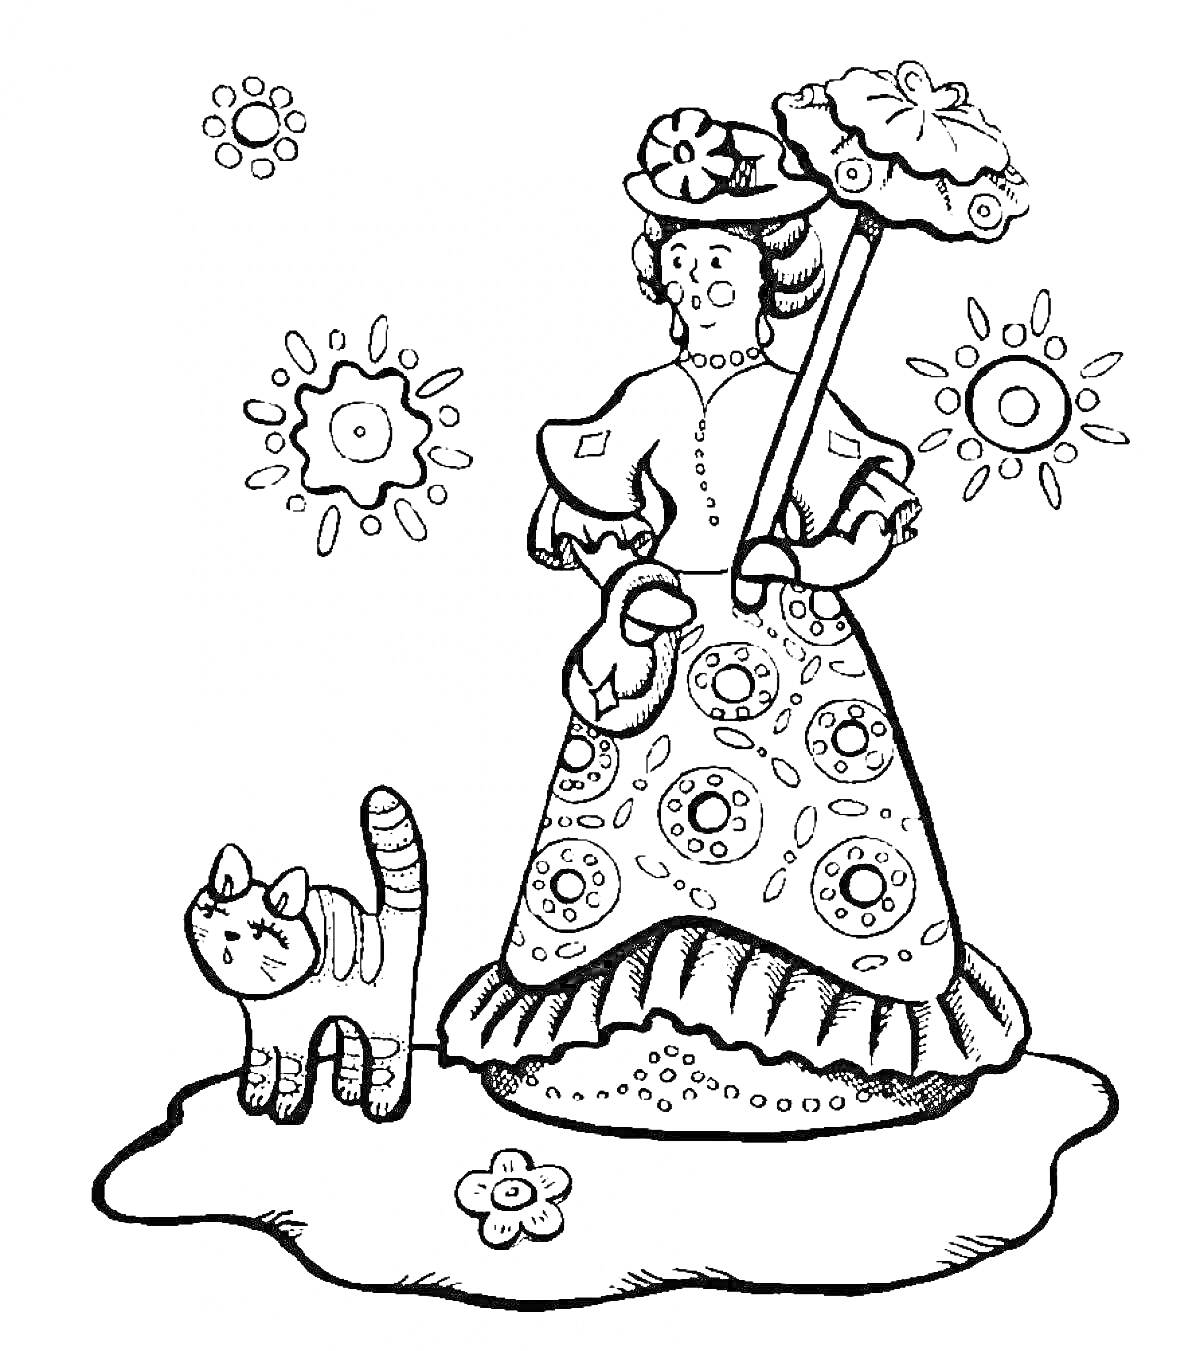 Дымковская барышня с цветочным узором, держащая зонт и кот рядом